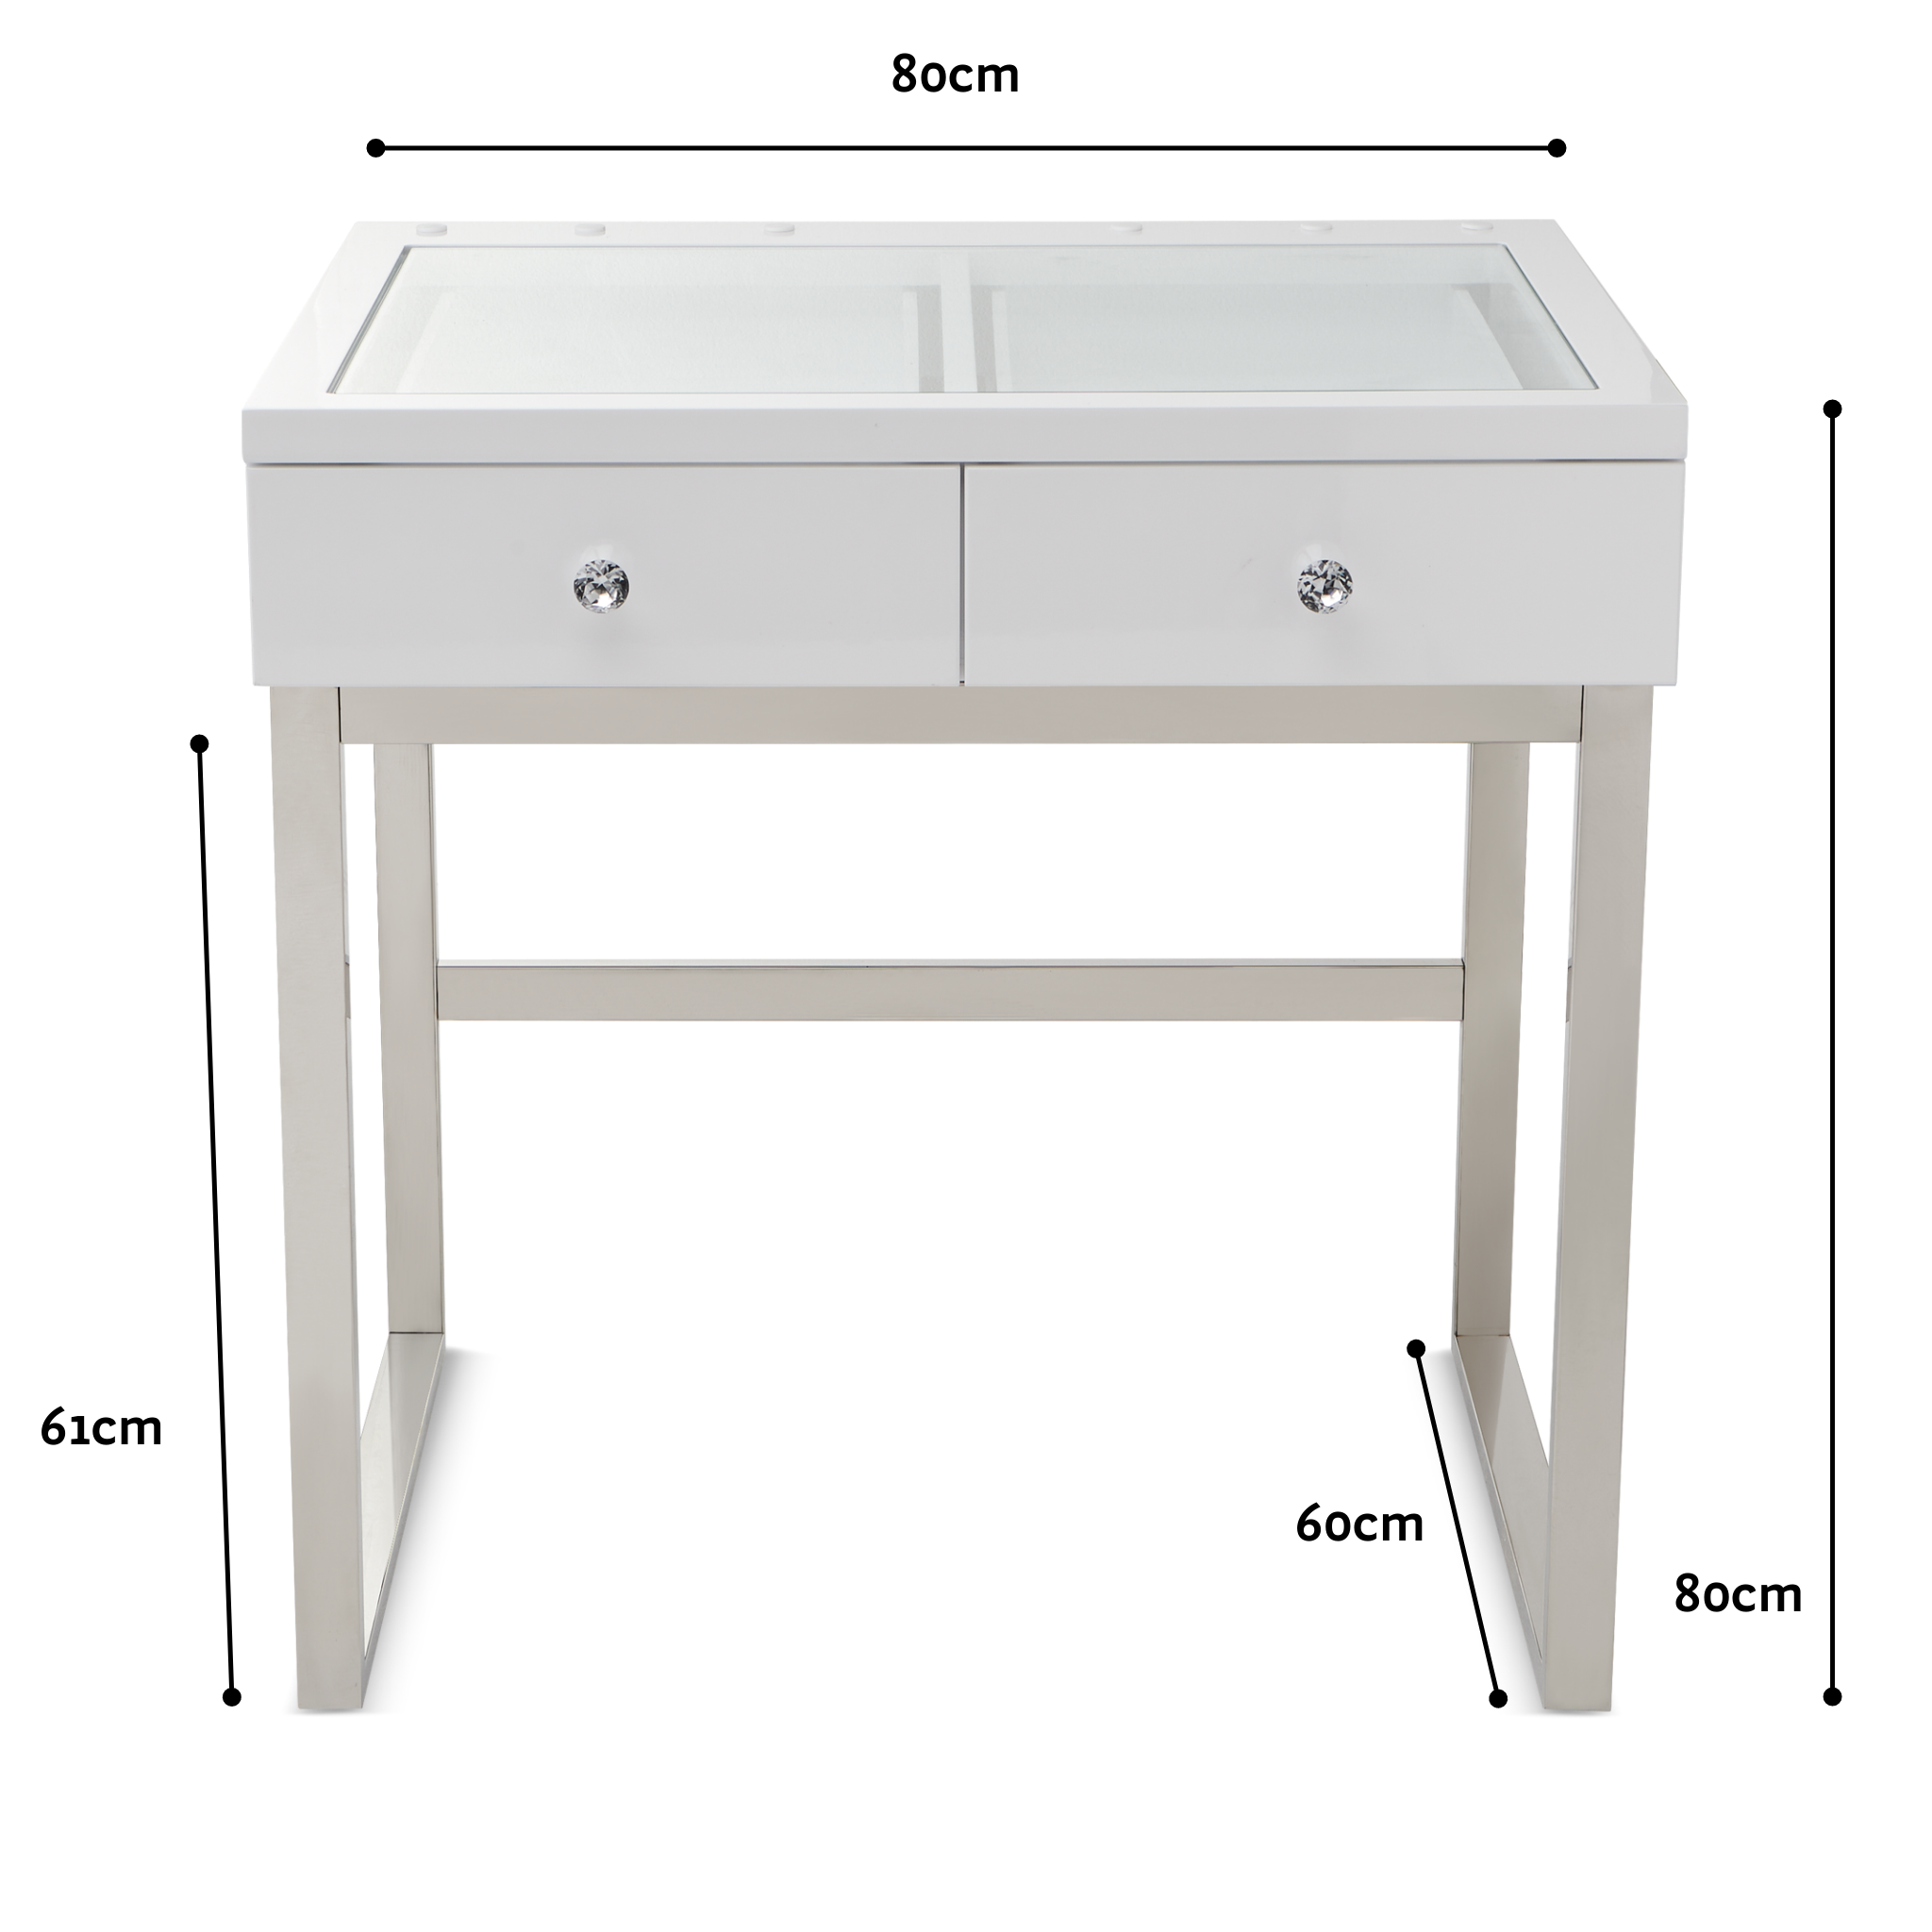 Mini Iconic Vanity Table: White